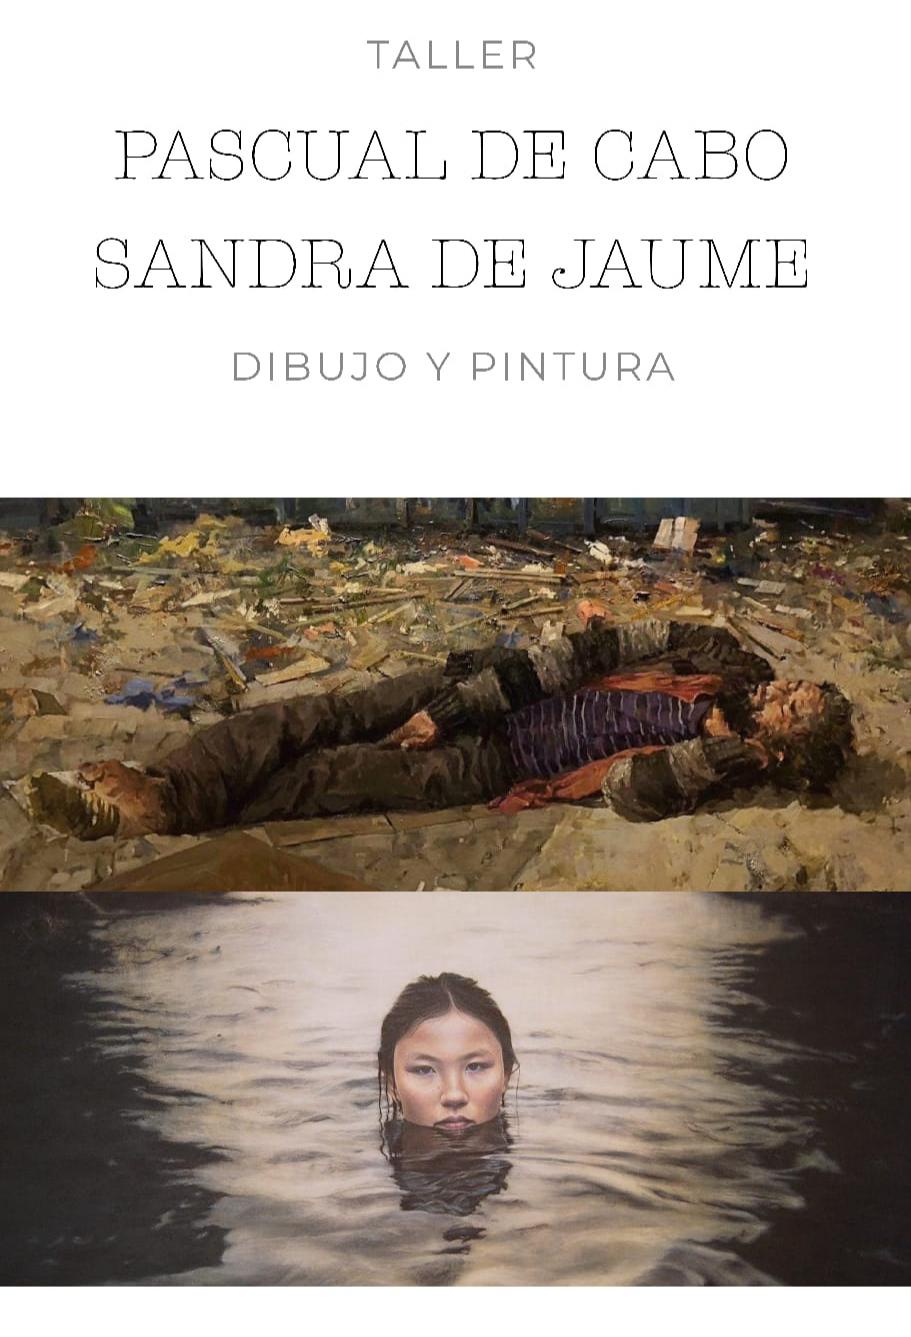 Images Sandra de Jaume